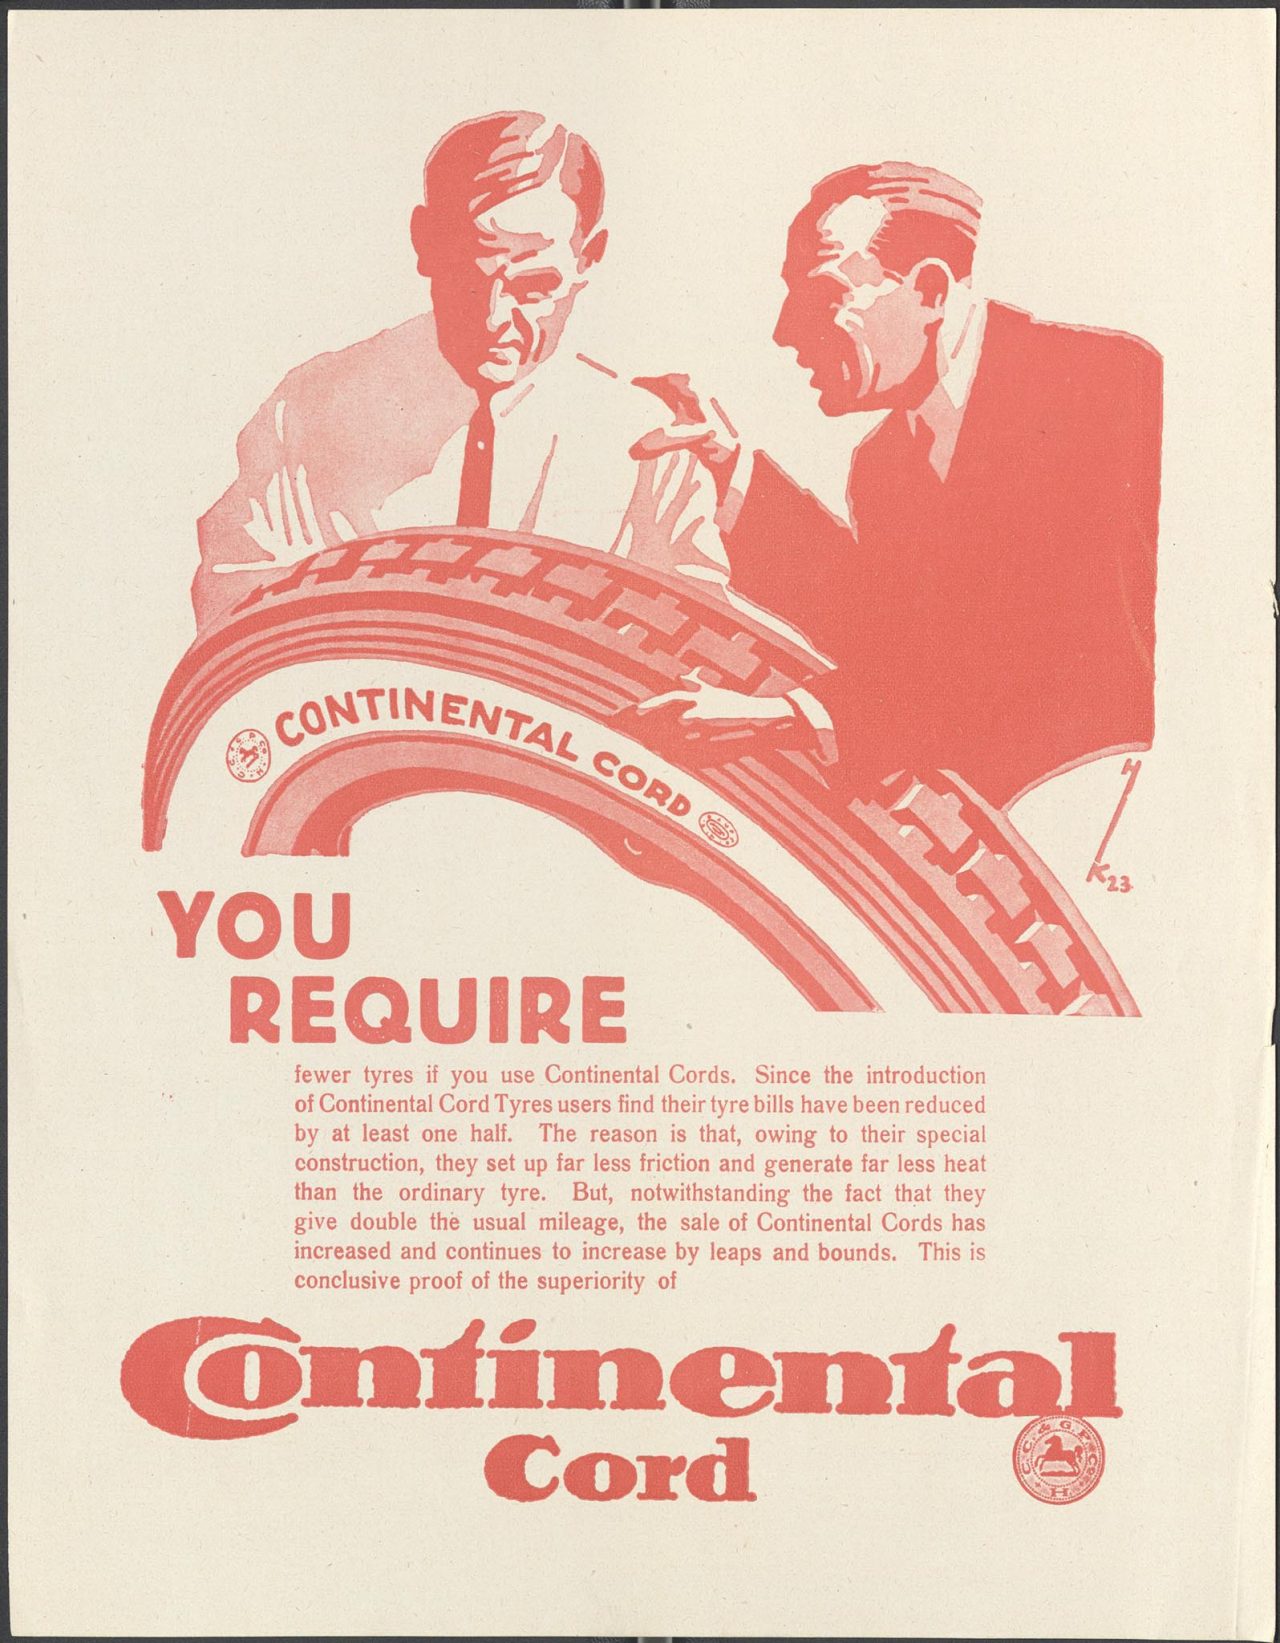 Die Werbung für Cordreifen von Continental begann früh